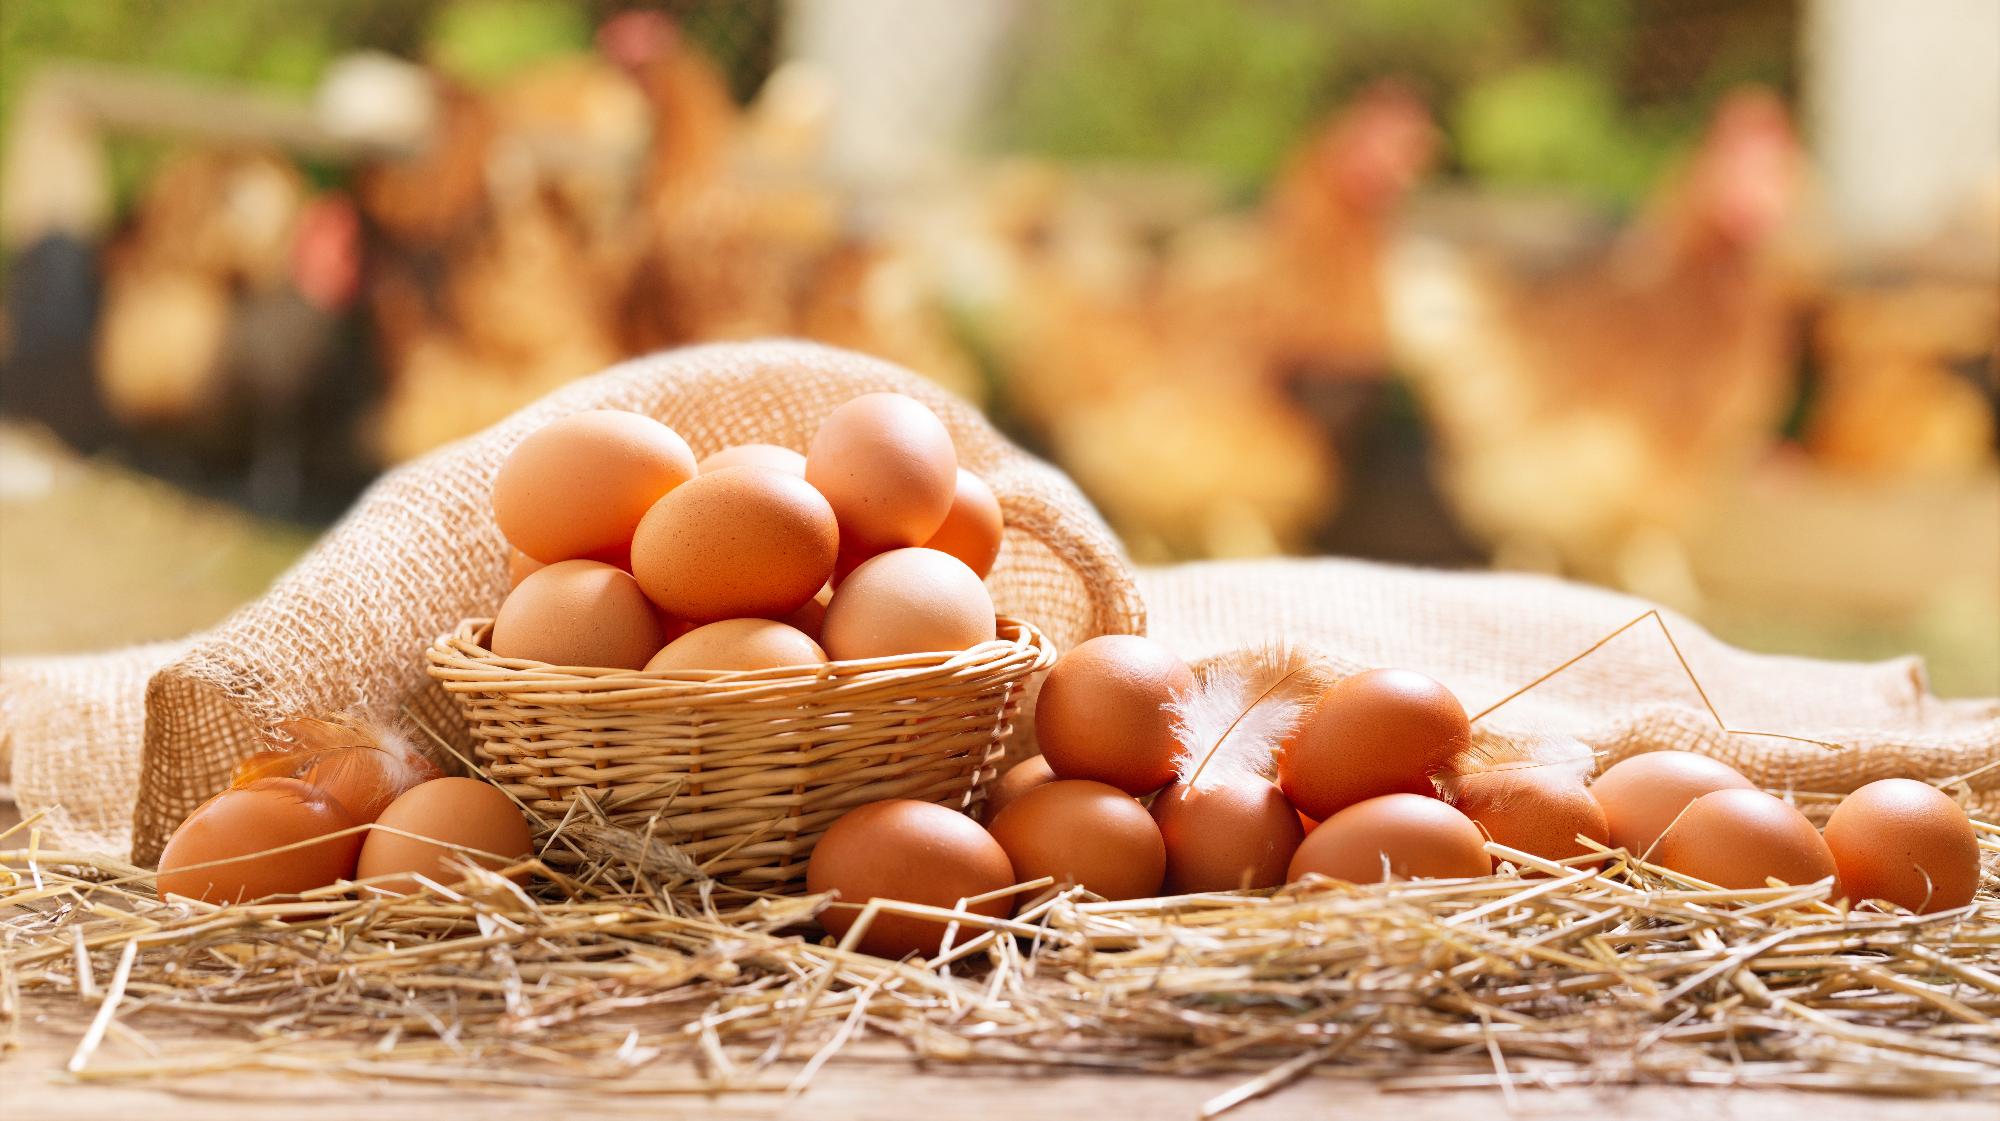 Harmadával olcsóbb lehet a húsvéti tojás tavalyhoz képest